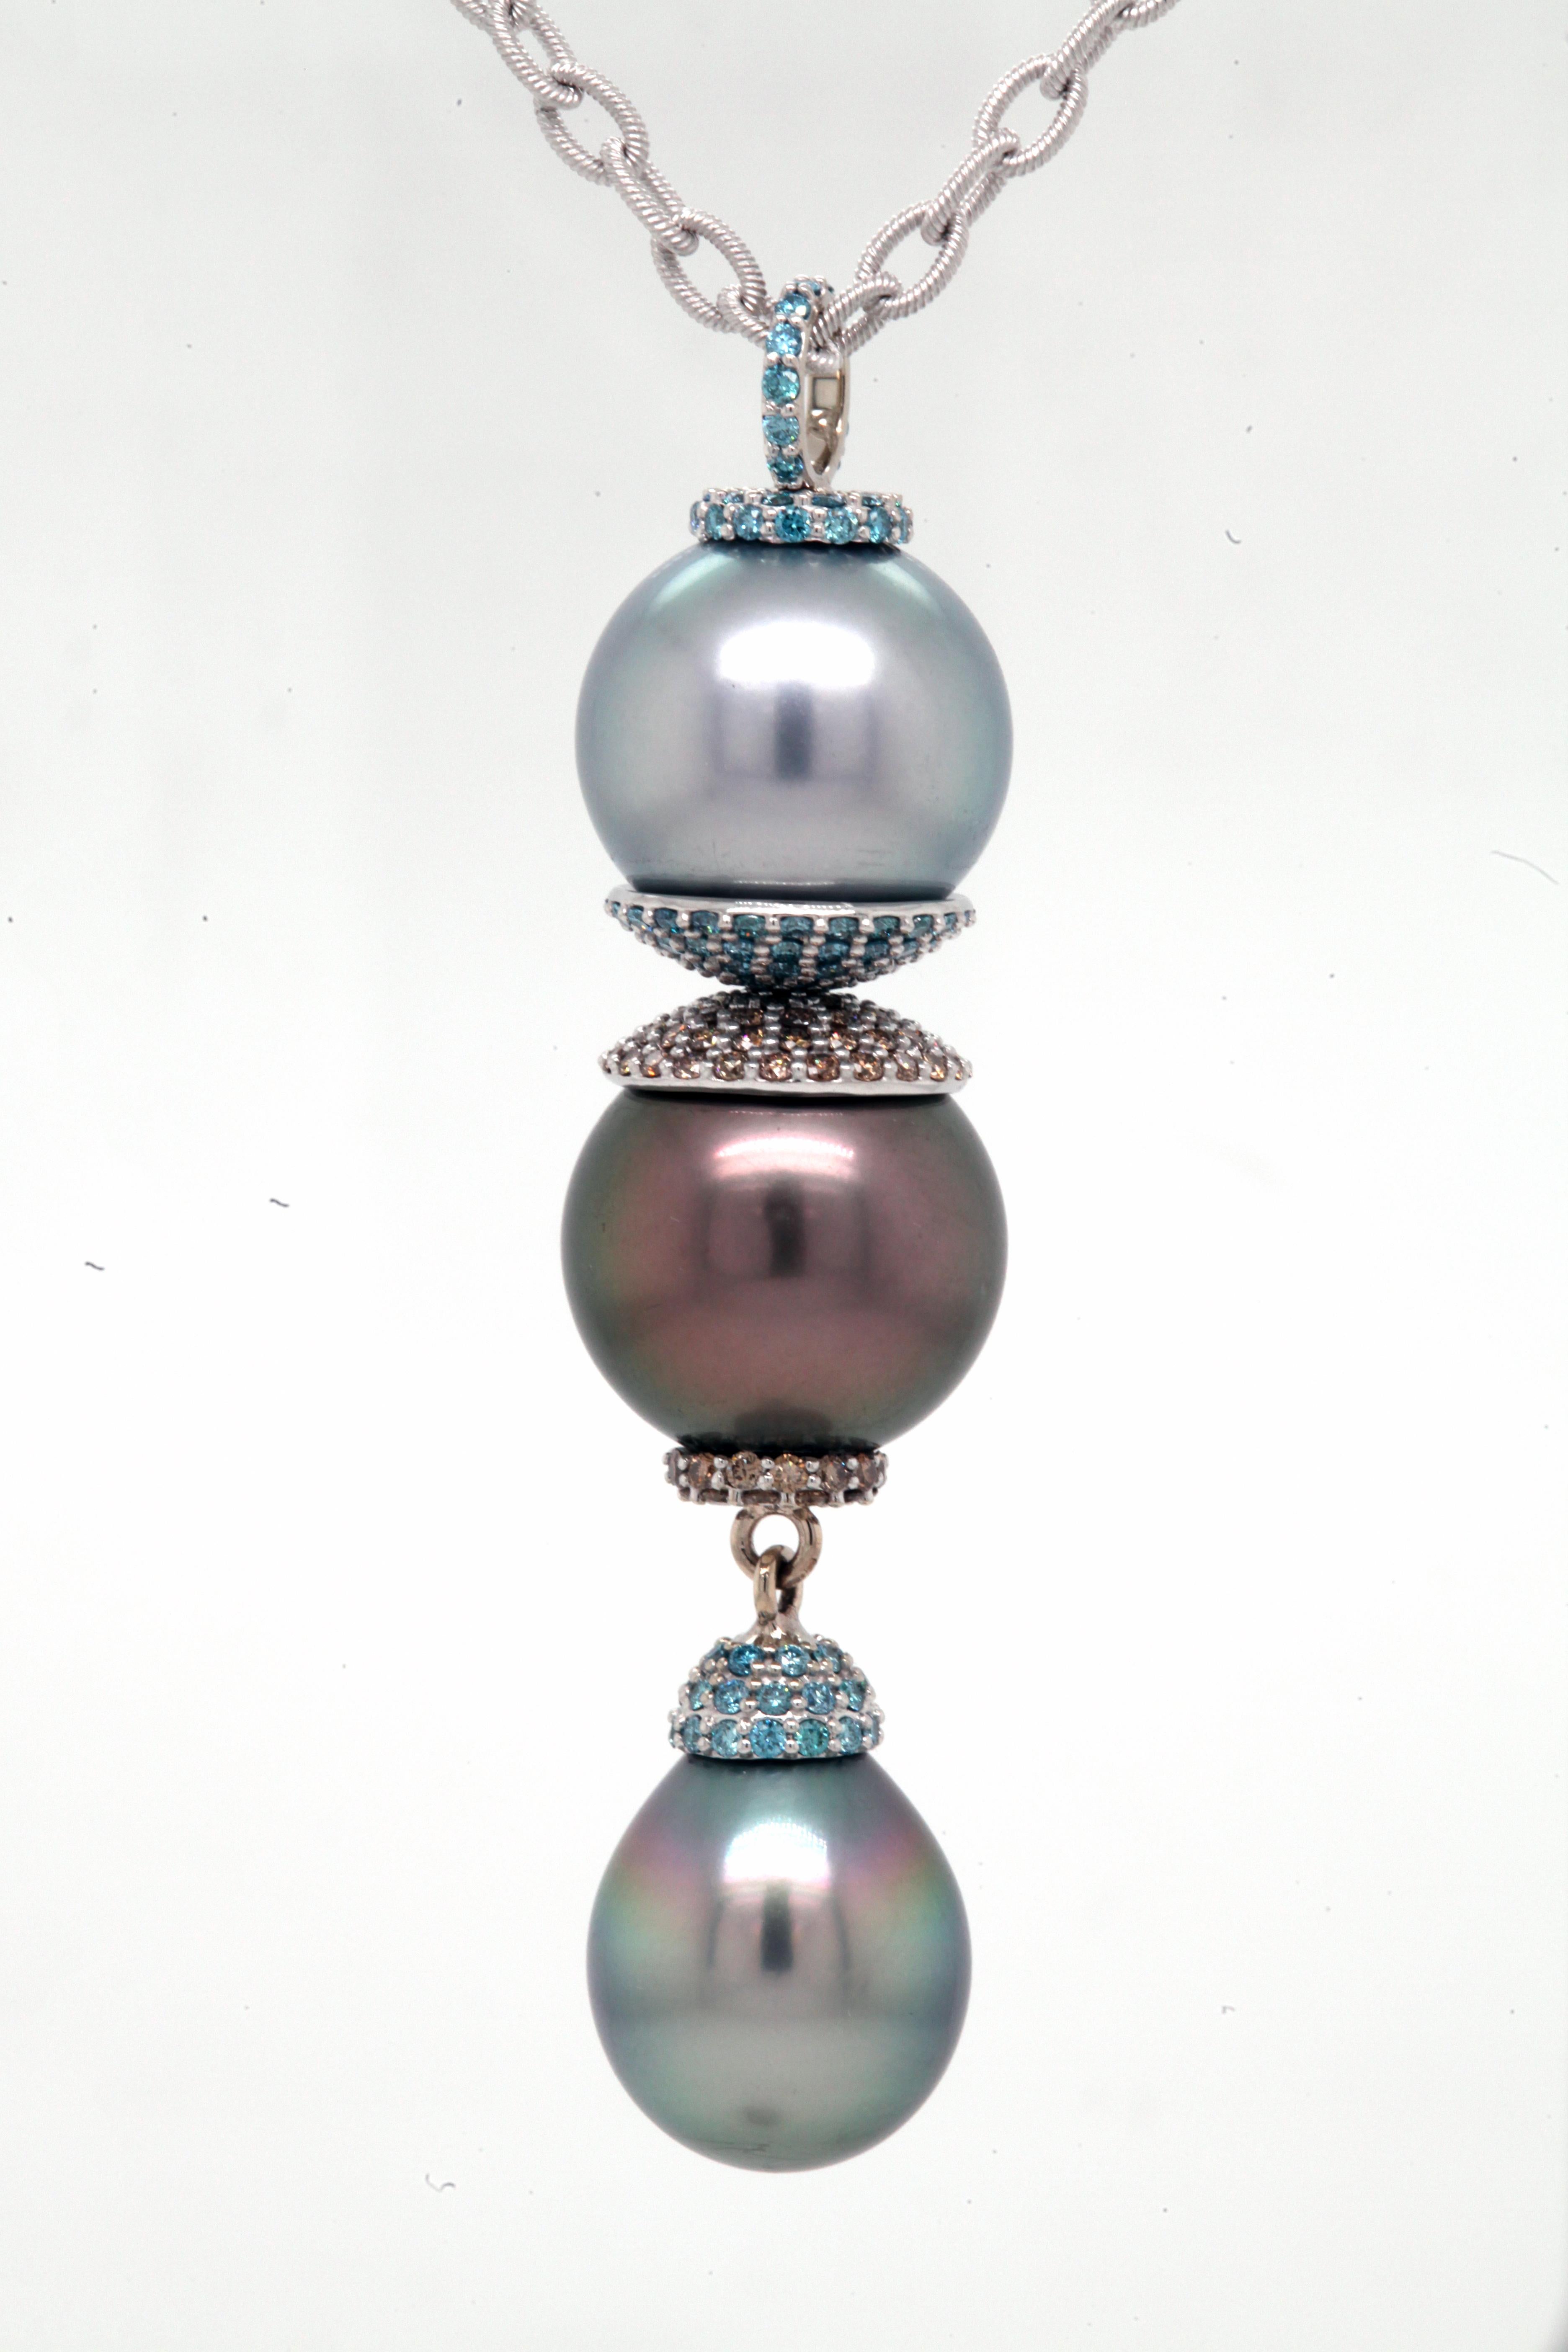 Un pendentif en or blanc 18k à triple chute de perles serti de perles de Tahiti, une gris clair/bleu, 14,07 mm, une gris foncé/brun, 14,44 mm, et une larme vert bleuté, 12,5 mm x 15,5 mm. Également sertie de 1,088 carats de diamants bleu aqua de 1,2